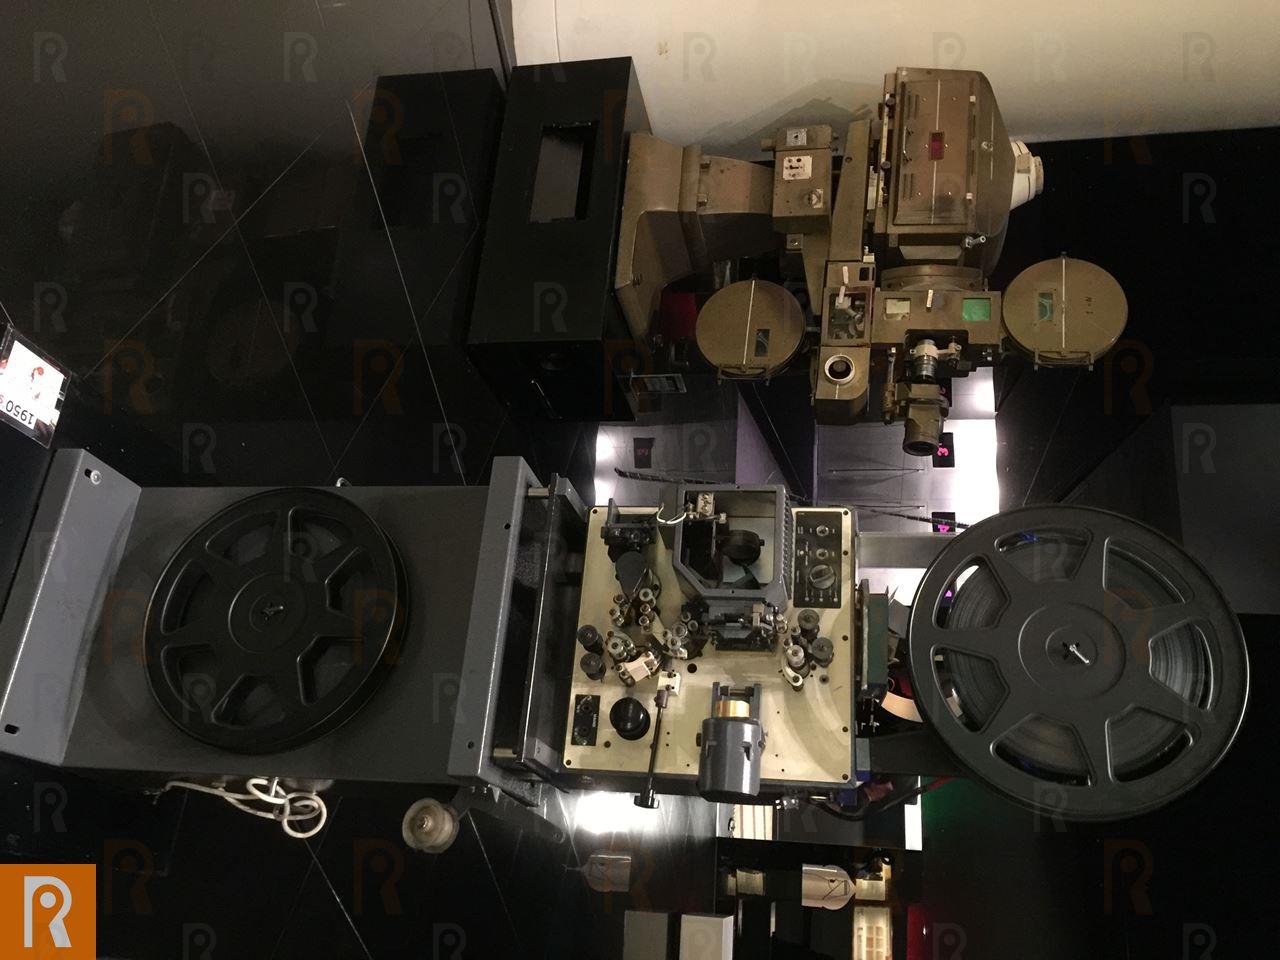 آلات العرض القديمة في السينما ... بواسطتها يتم تشغيل الأفلام